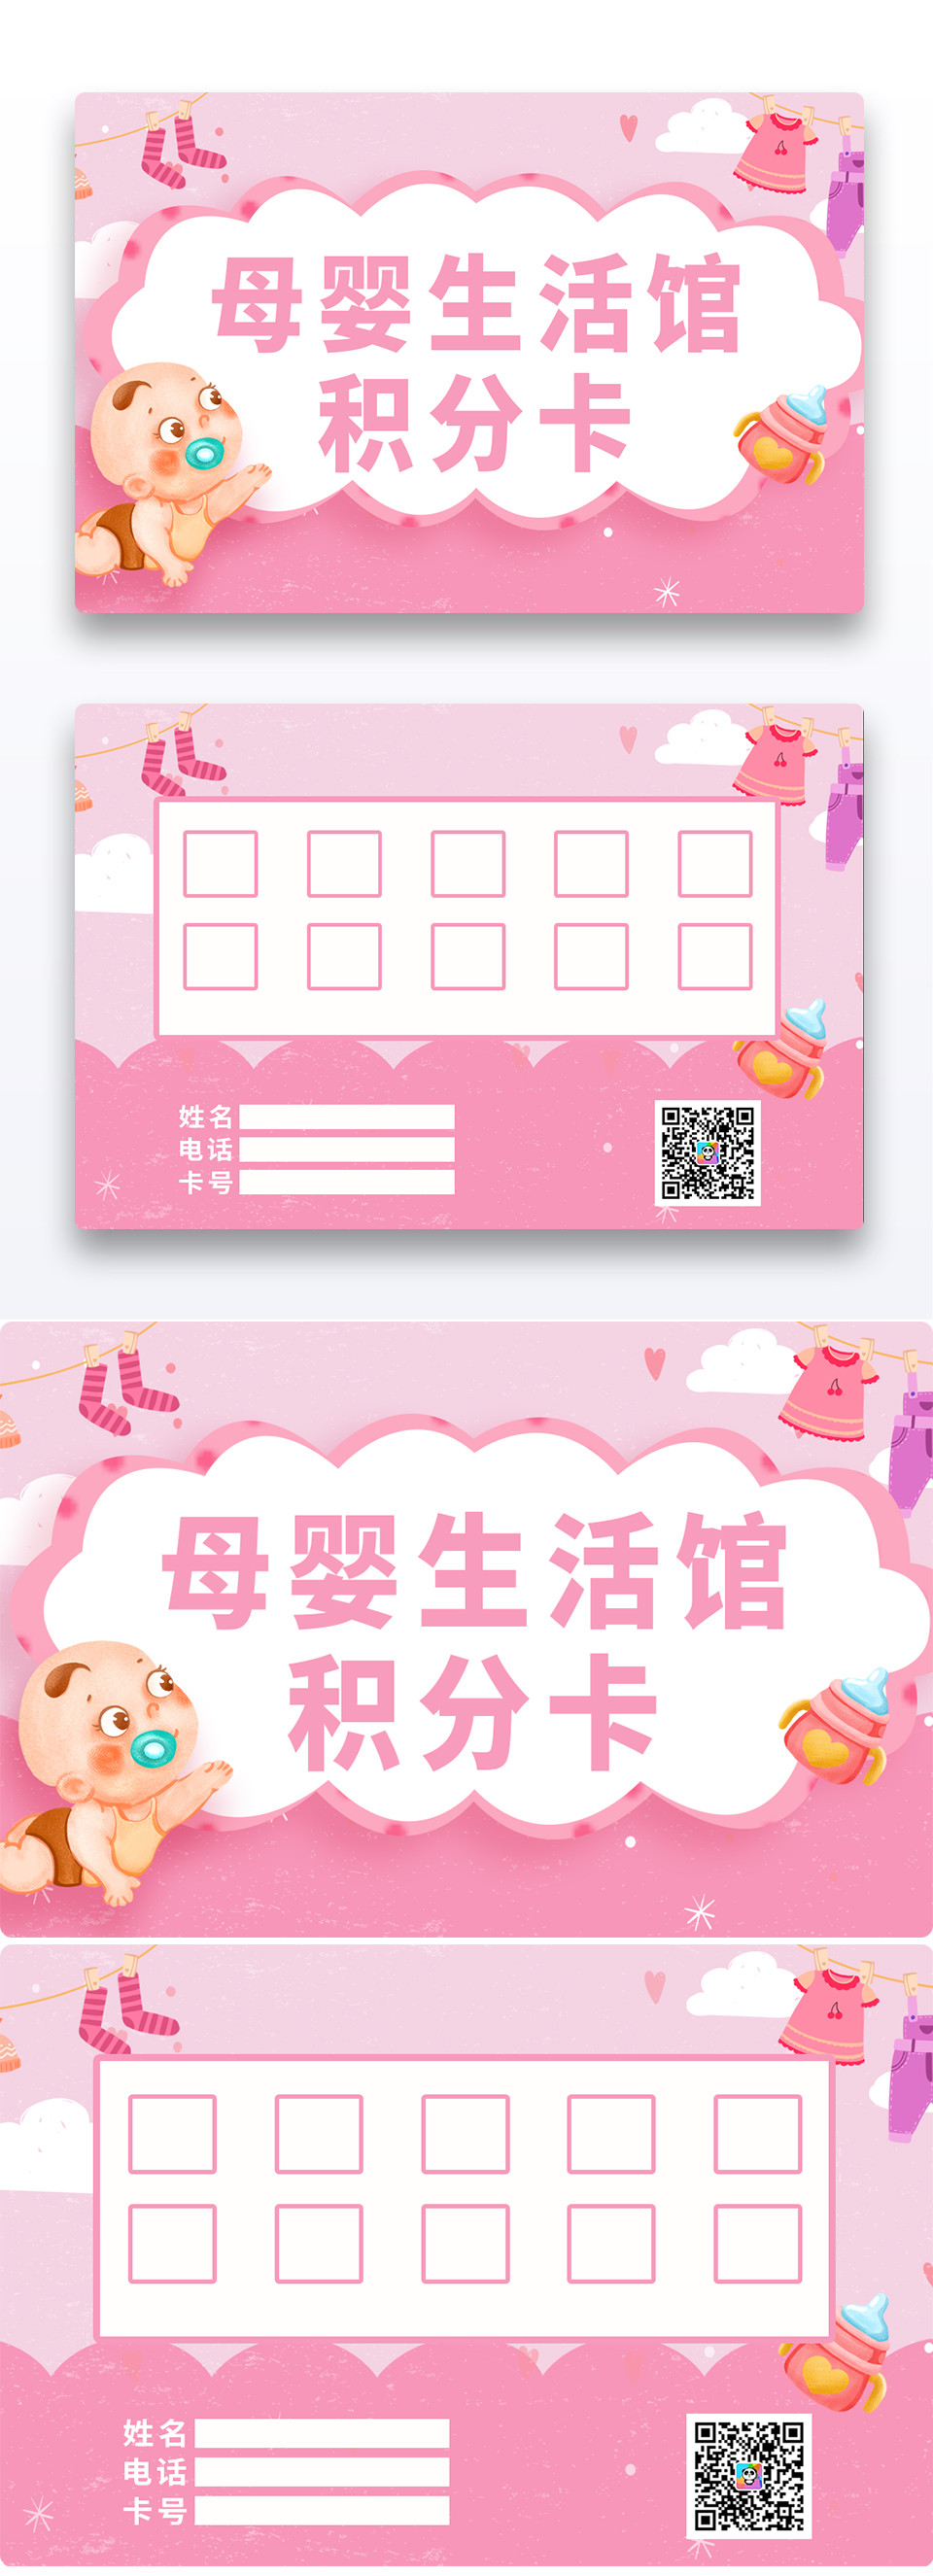 育儿粉色温馨母婴生活馆积分卡设计